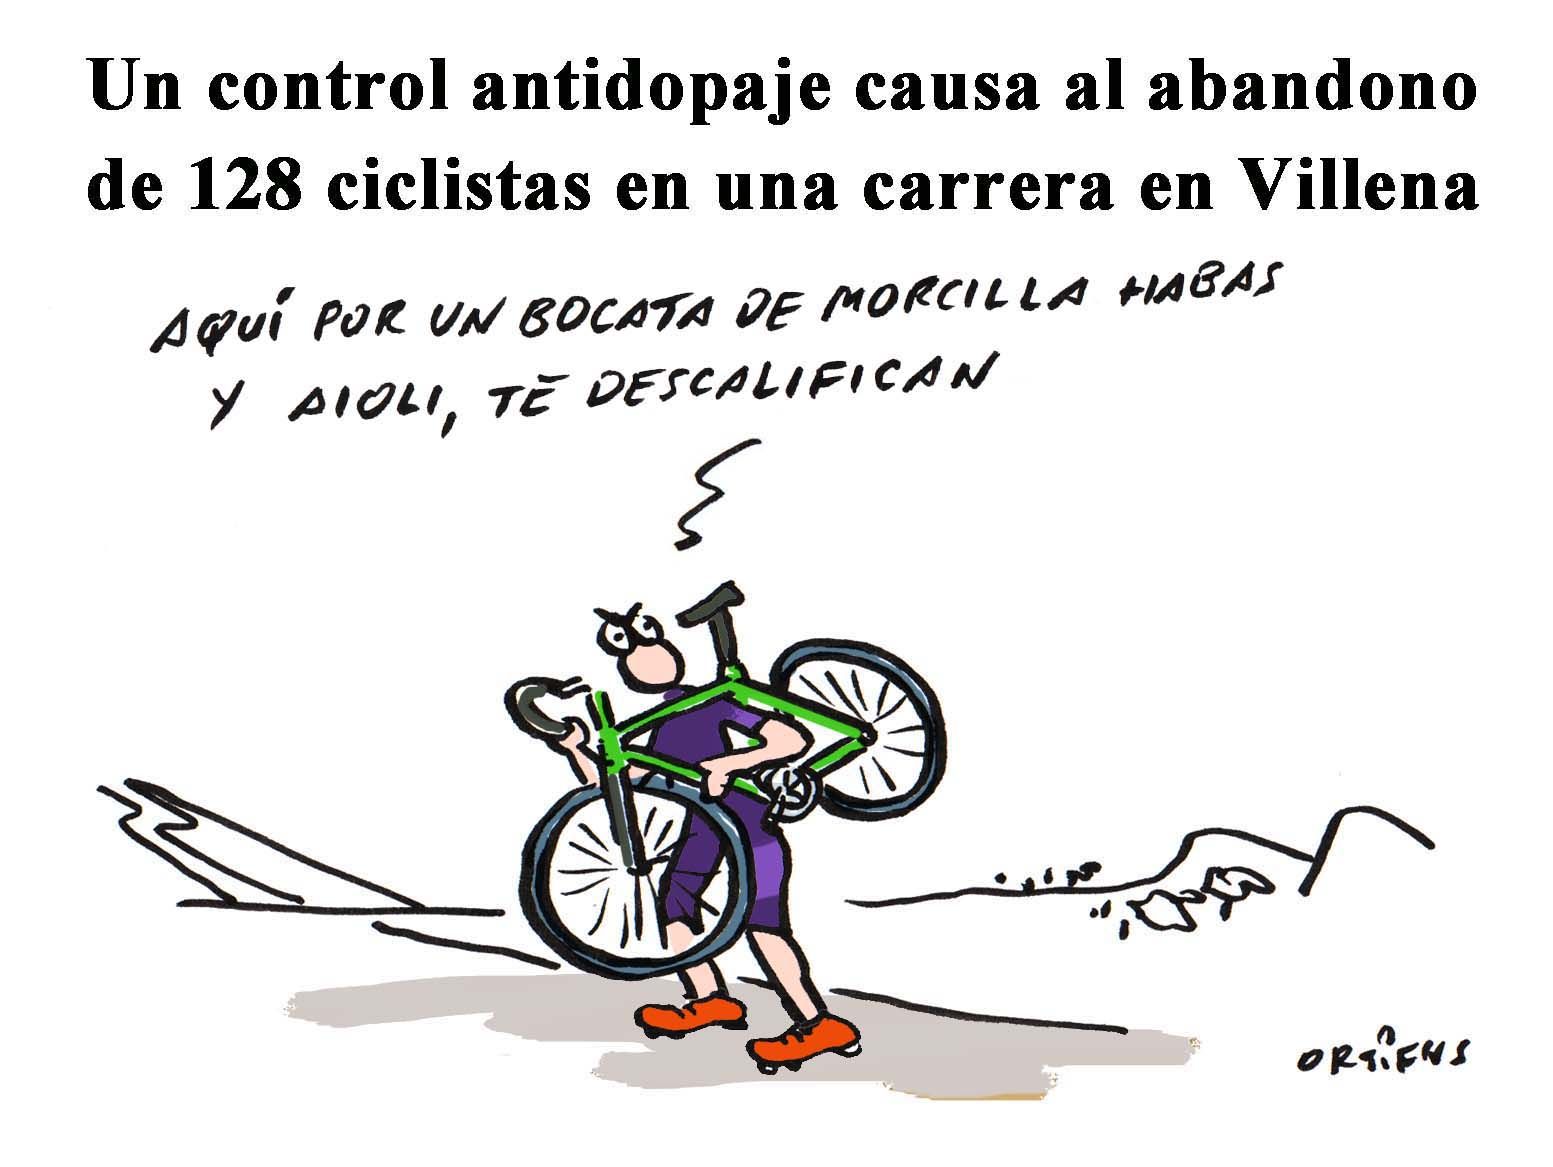 Un control antidopaje causa el abandono de 128 ciclistas en una carrera en Villena